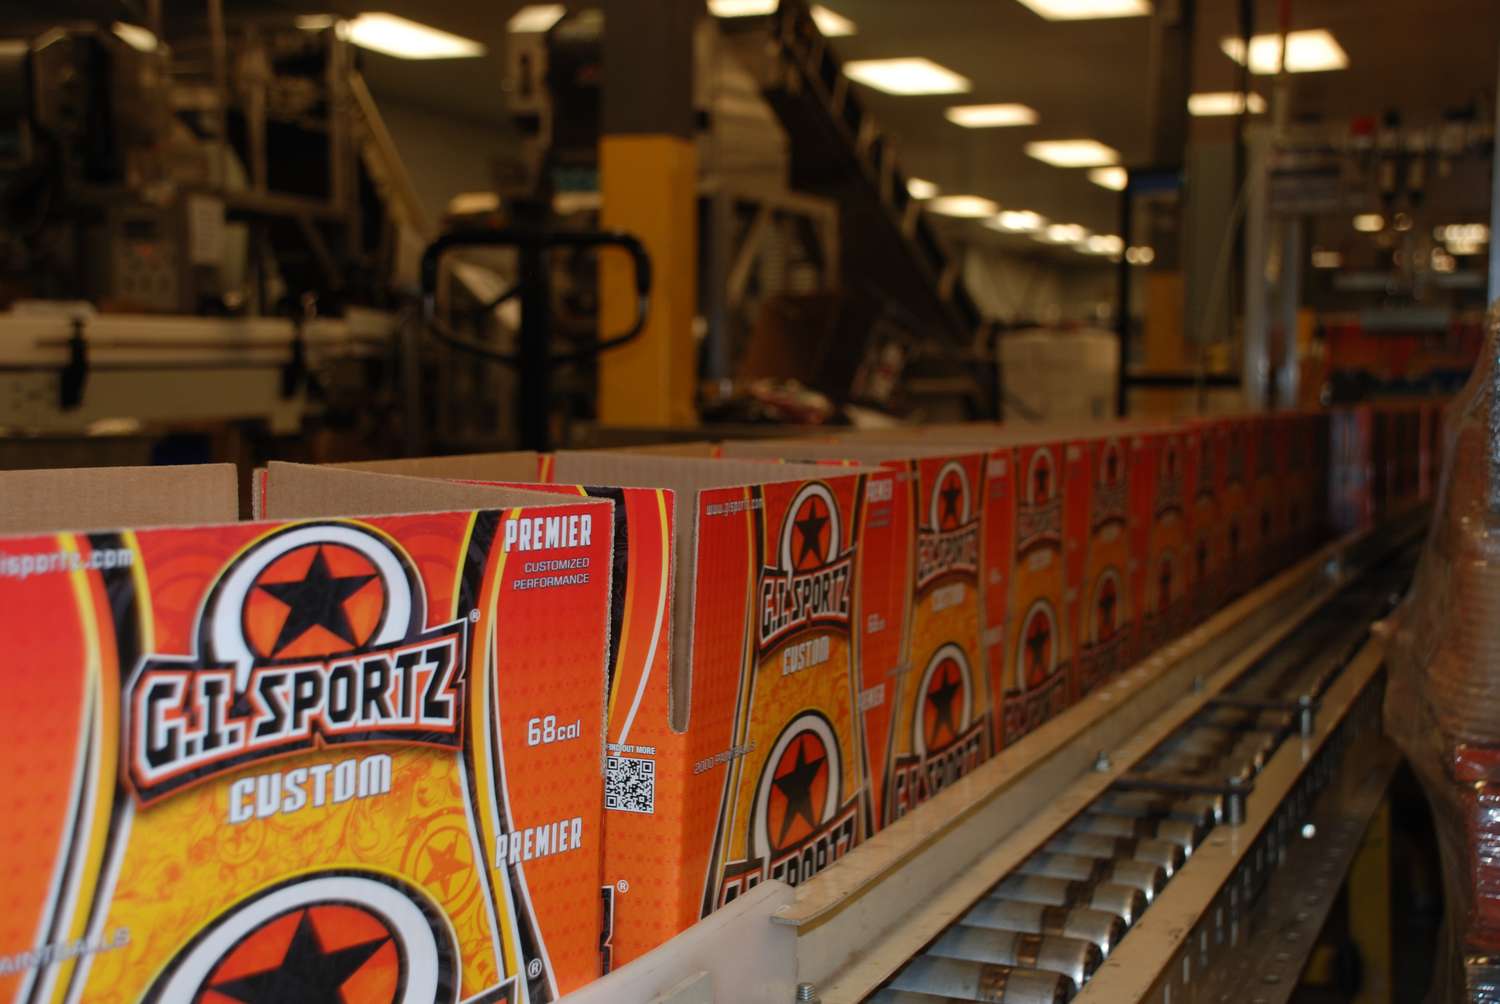 G.I. Sportz Montreal HQ Factory - Máquina fabricando bolas de pintura - Cajas siendo llenadas